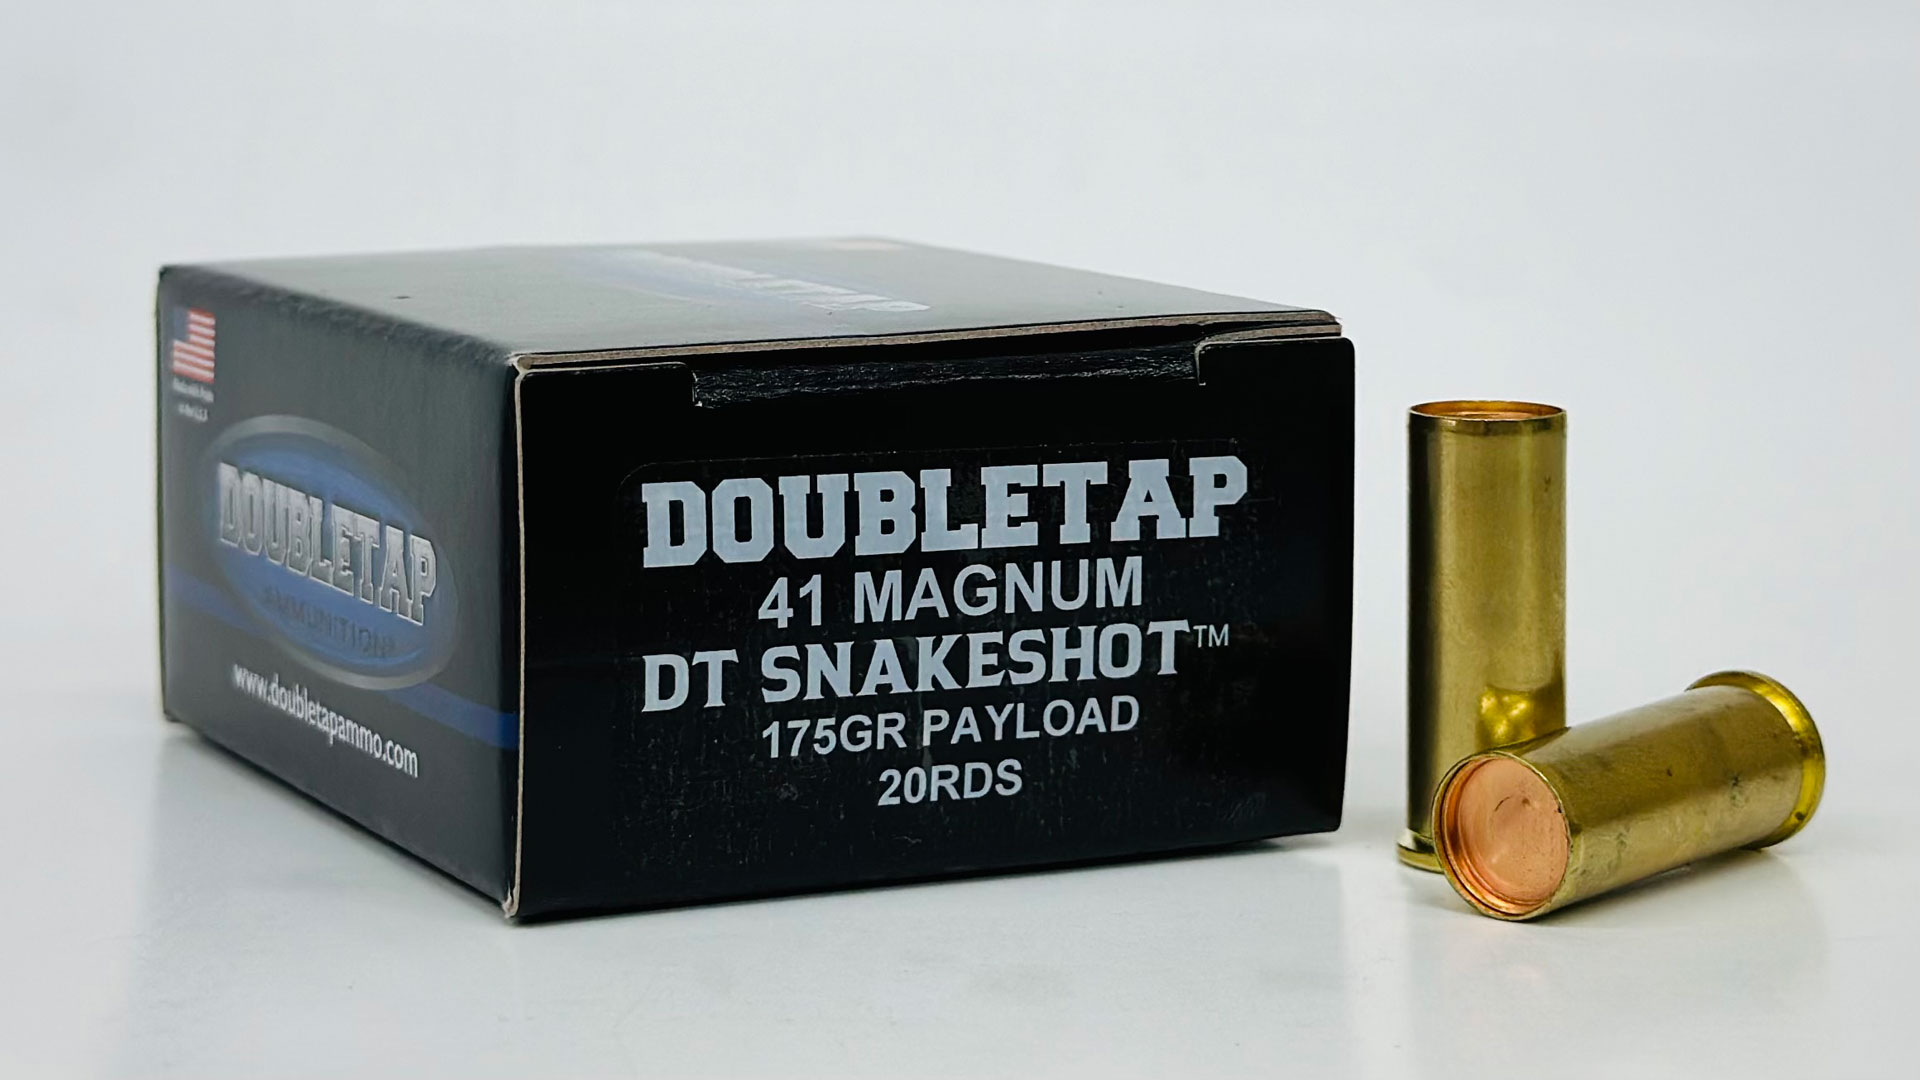 Doubletap DT Snakeshot